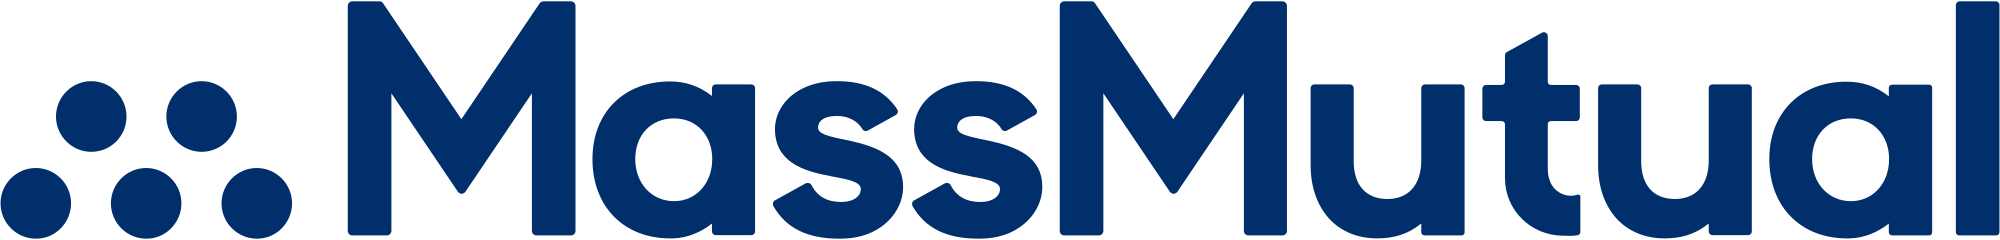 massmutual-logo